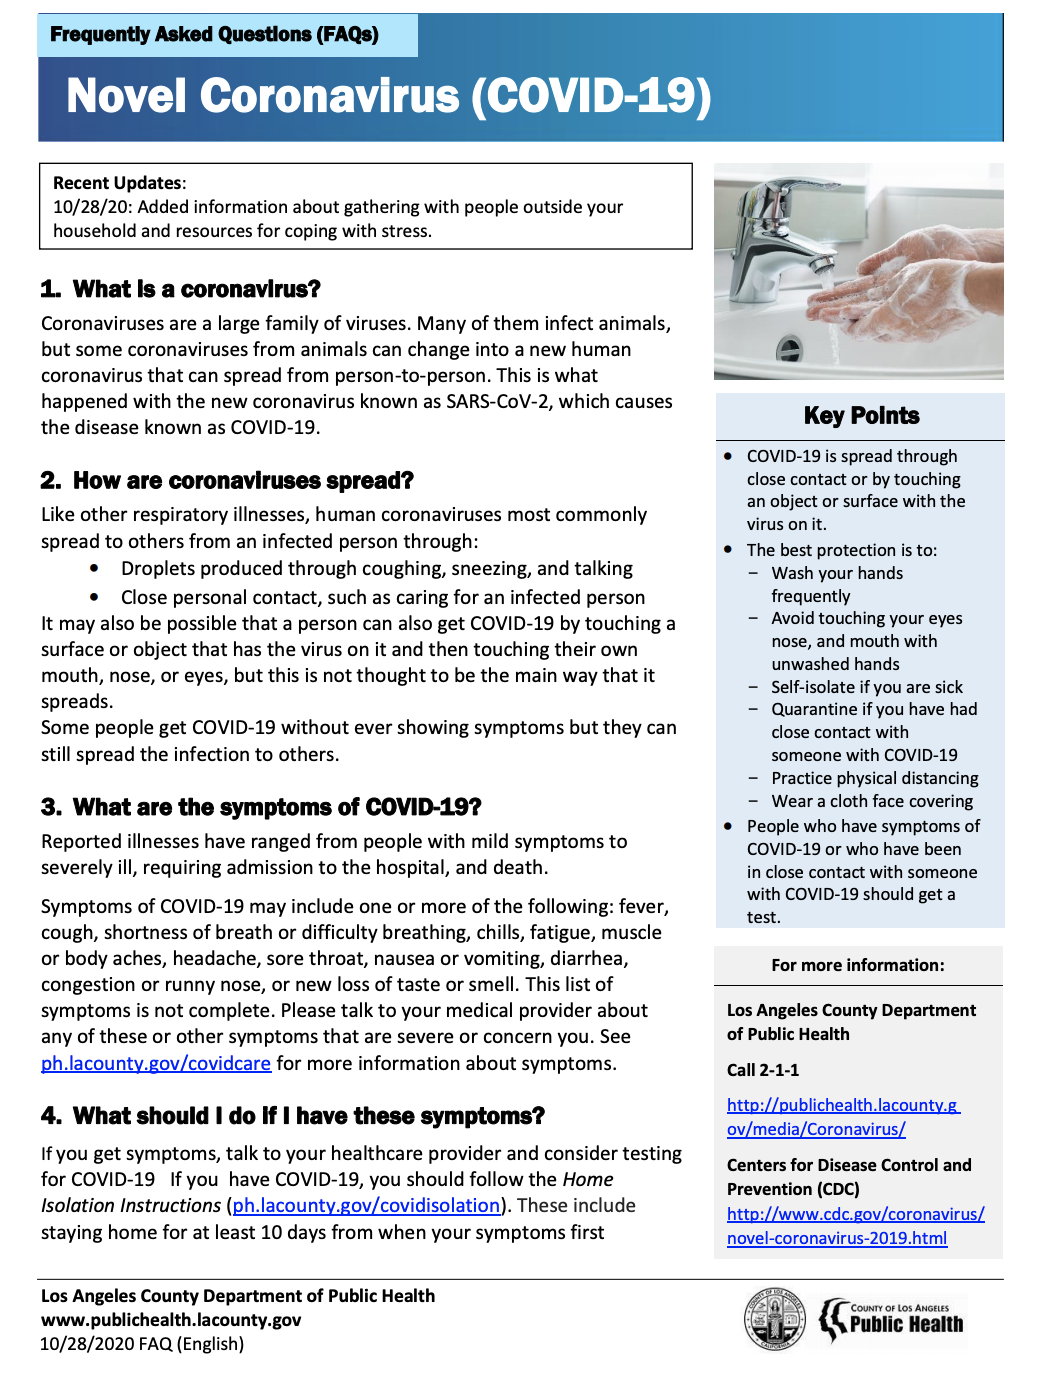 COVID-19 FAQs English  Image